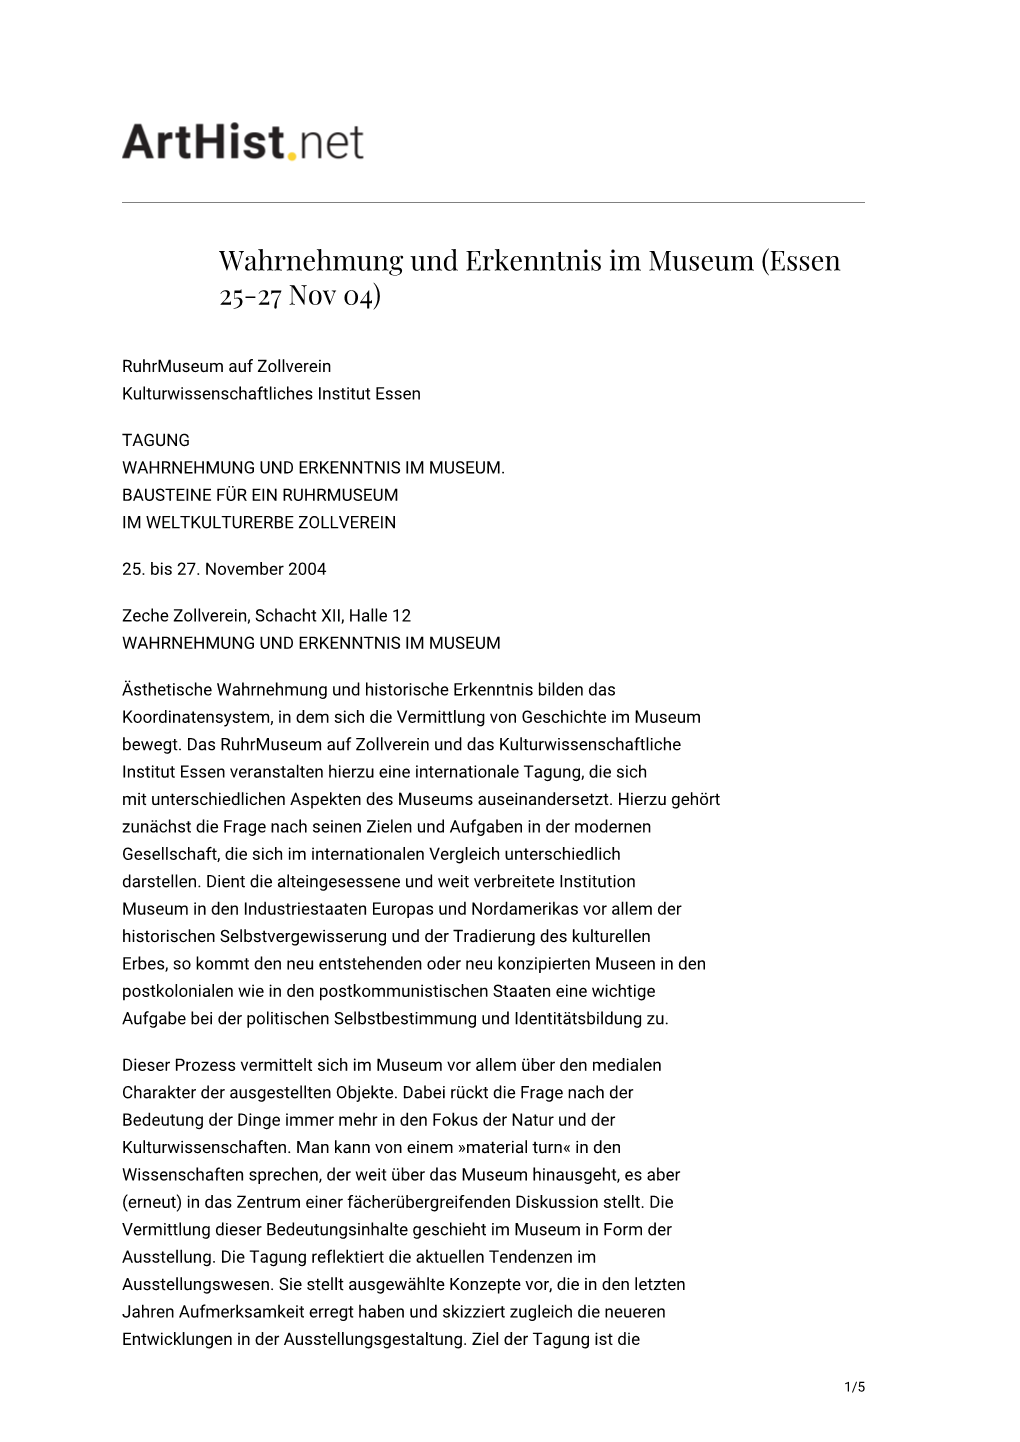 Wahrnehmung Und Erkenntnis Im Museum (Essen 25-27 Nov 04)